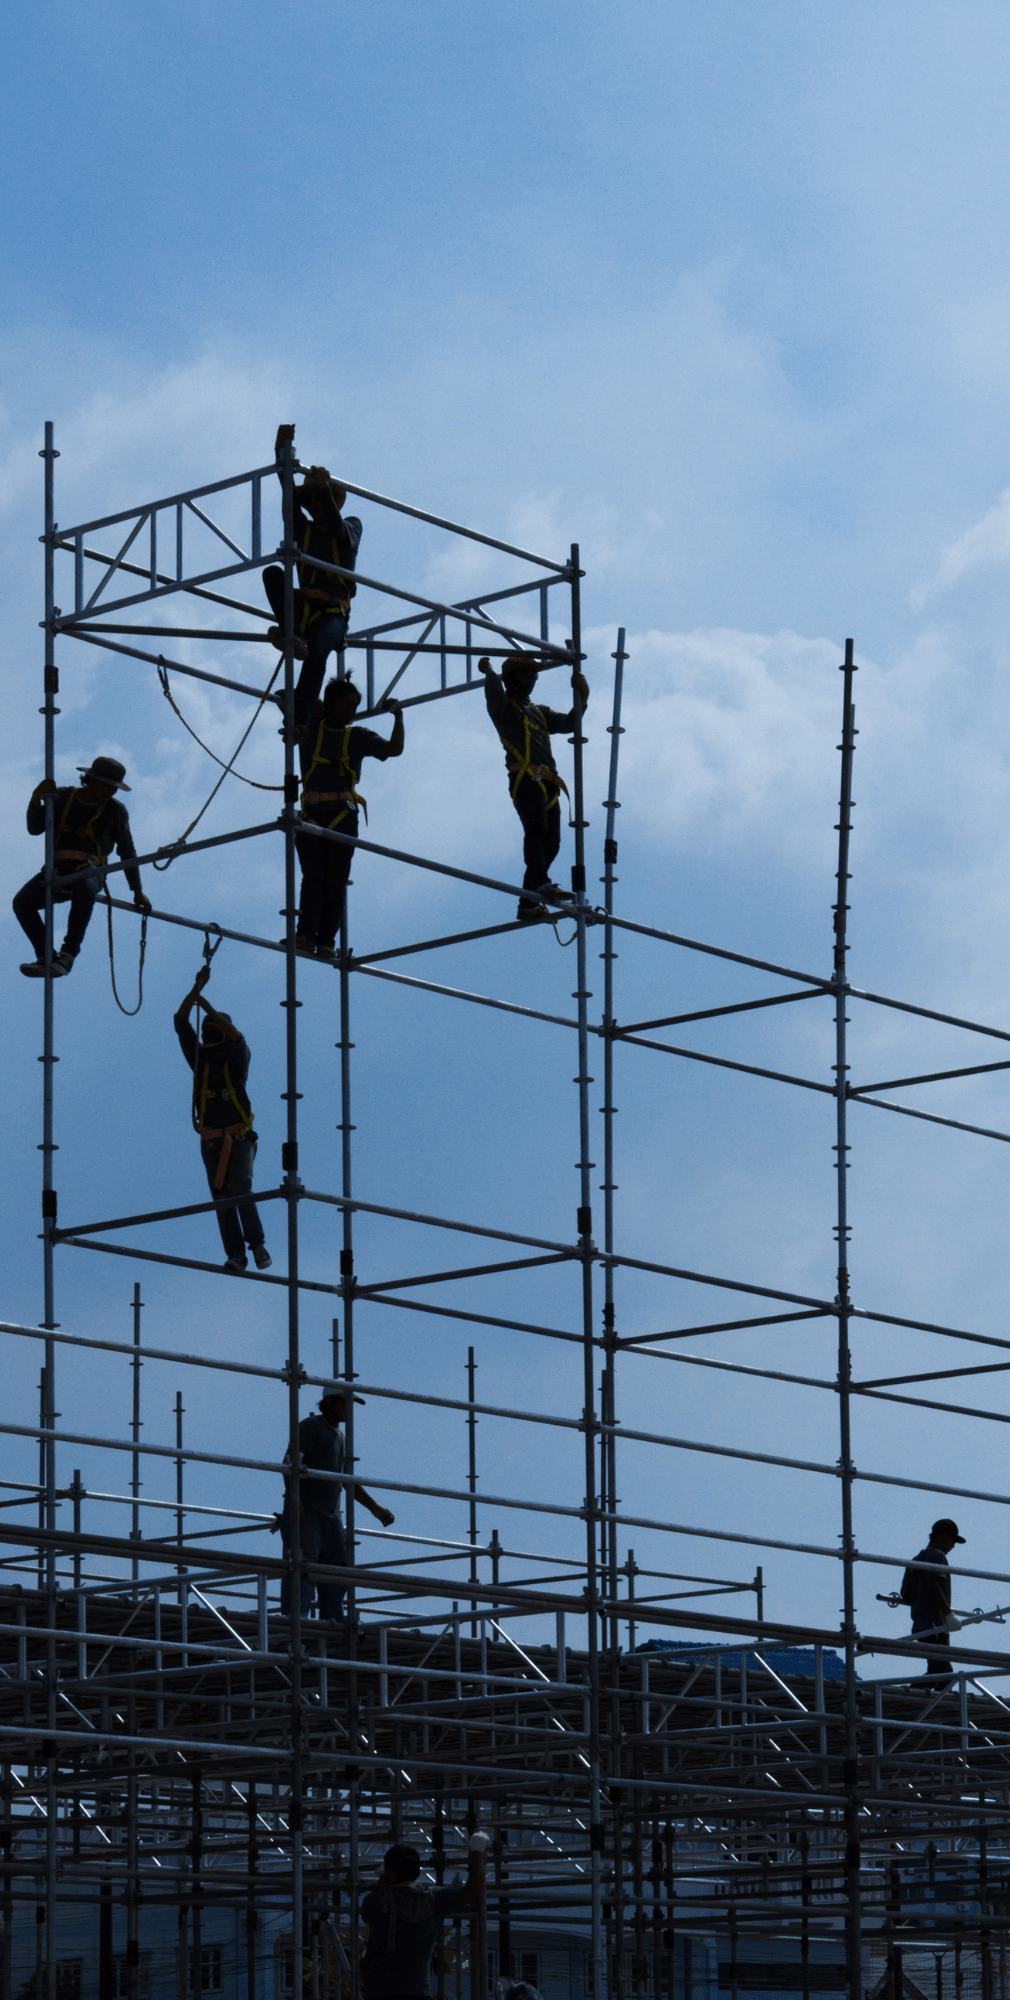 Das Bild zeigt, wie mehrere Arbeiter ein Gerüst errichten